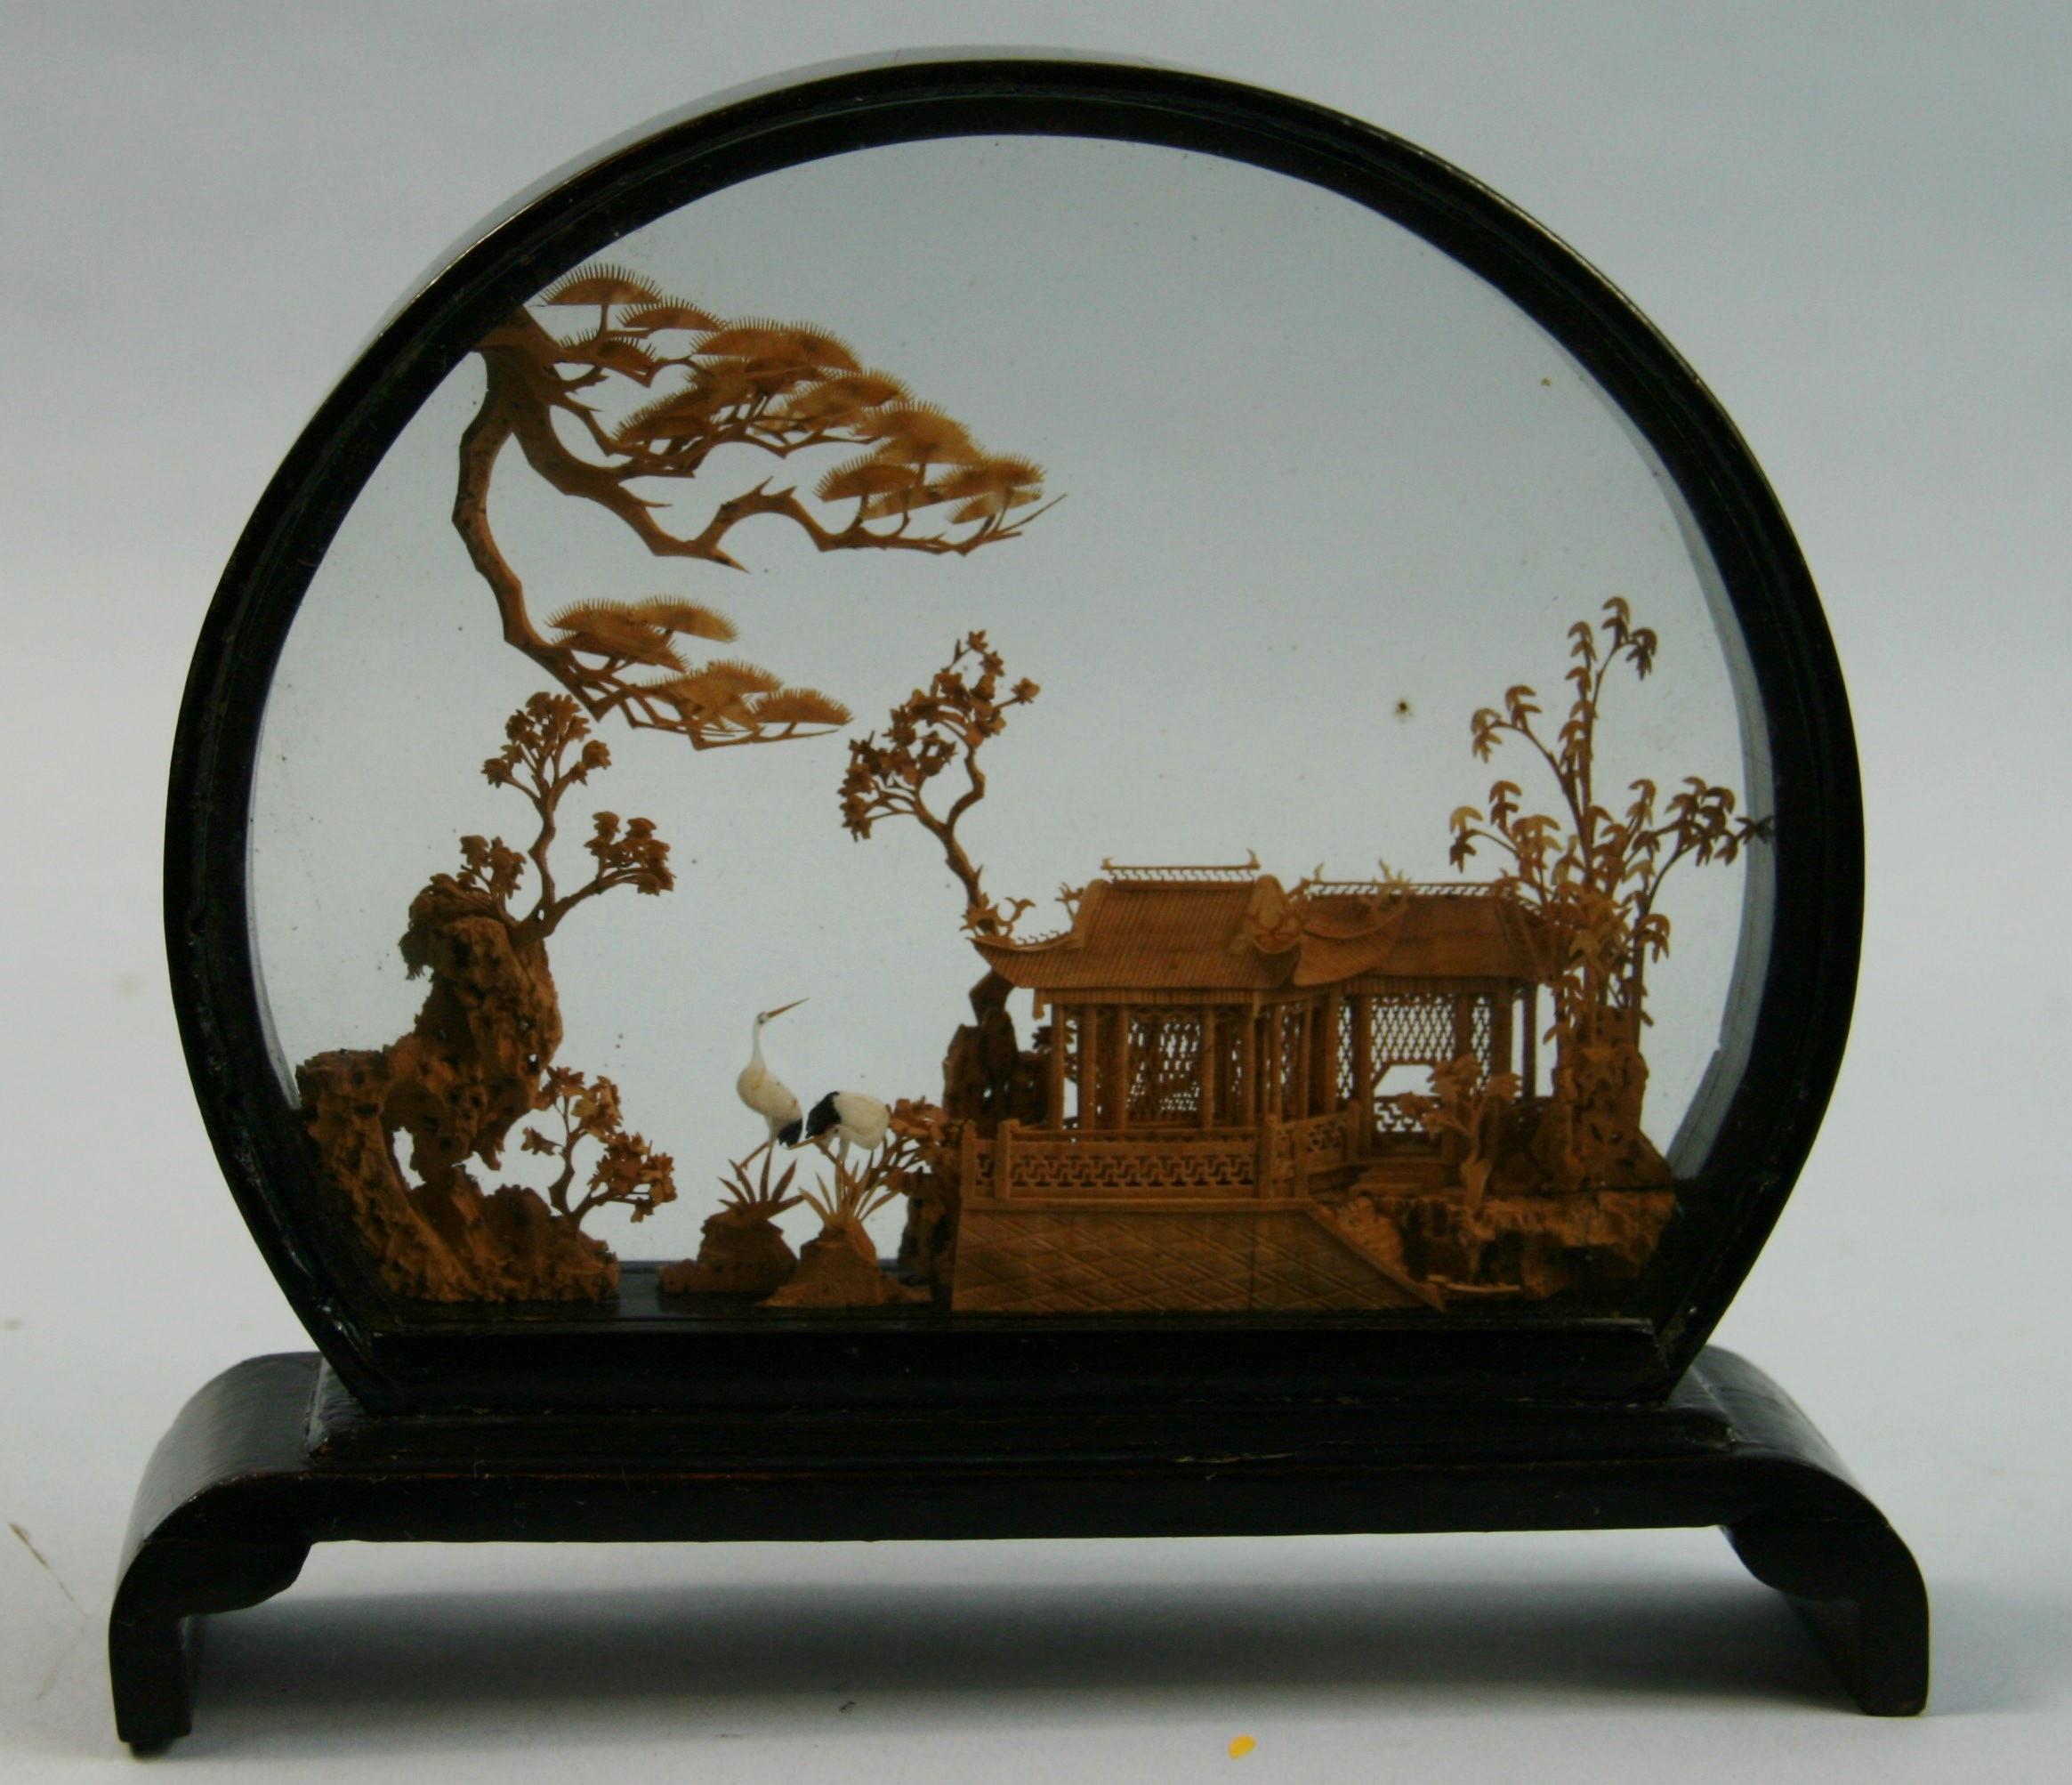 3-716 Chinesisches Diorama aus altem Glas und lackiertem Holz.
Sorgfältige, filigrane Miniaturskulptur, die eine chinesische Landschaftsansicht darstellt, eine Pagode in einem traditionellen Garten, umgeben von Koniferen, Bambusgestellen und Ranken.